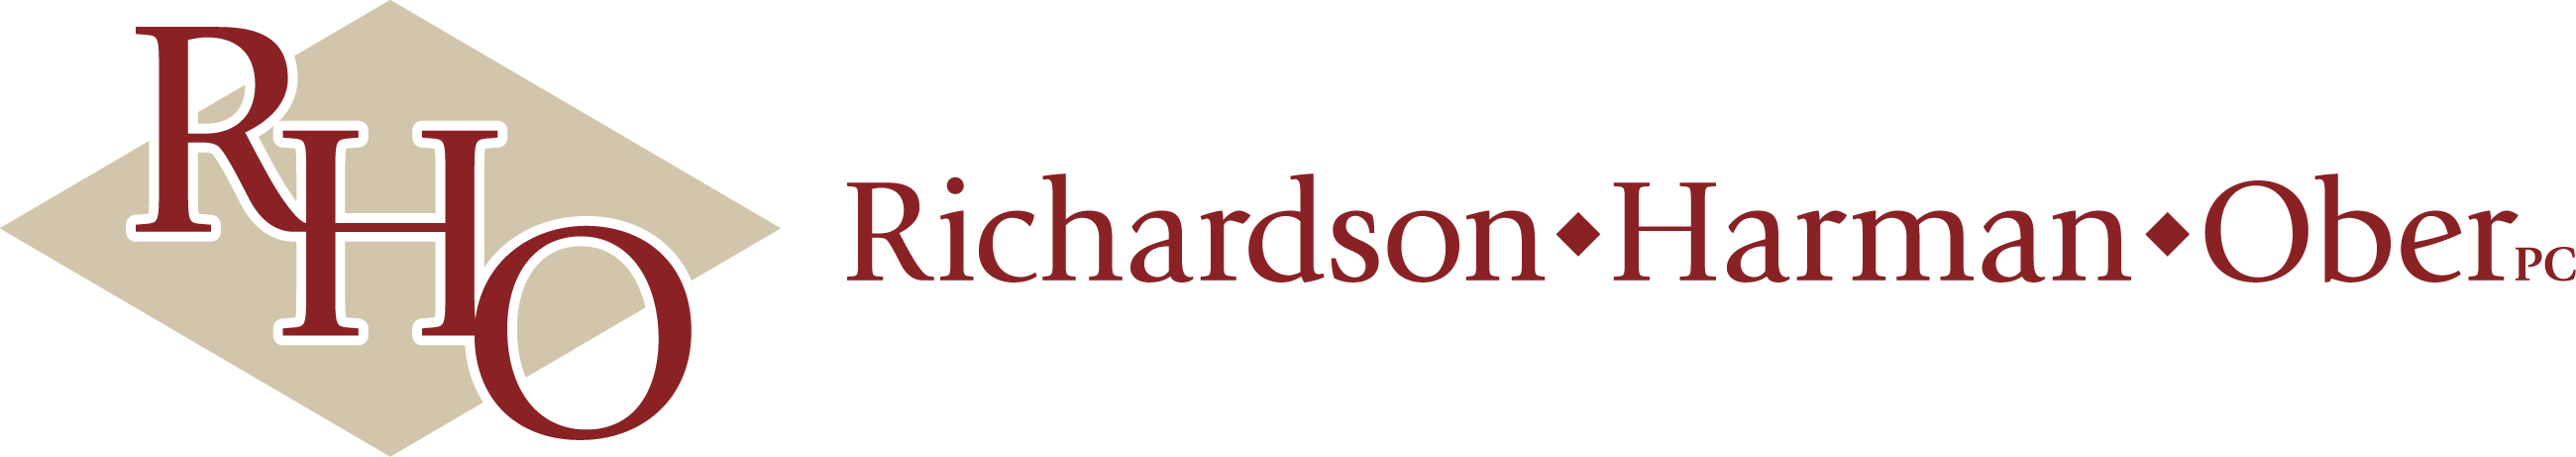 Richardson Harman Ober, PC Logo.PNG